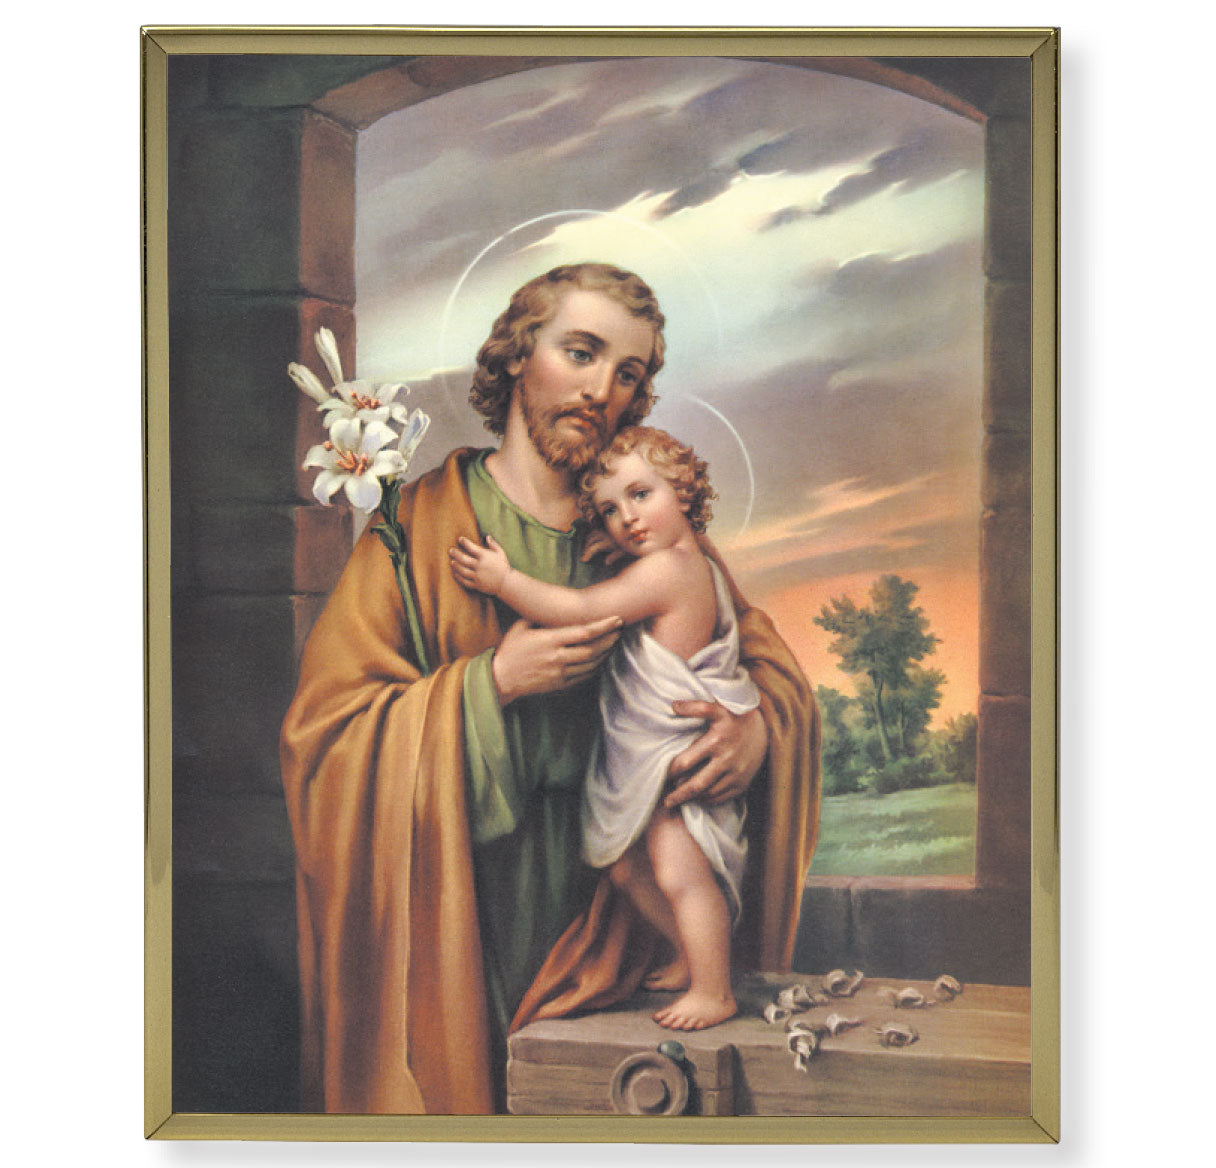 St. Joseph Gold Framed Plaque Art